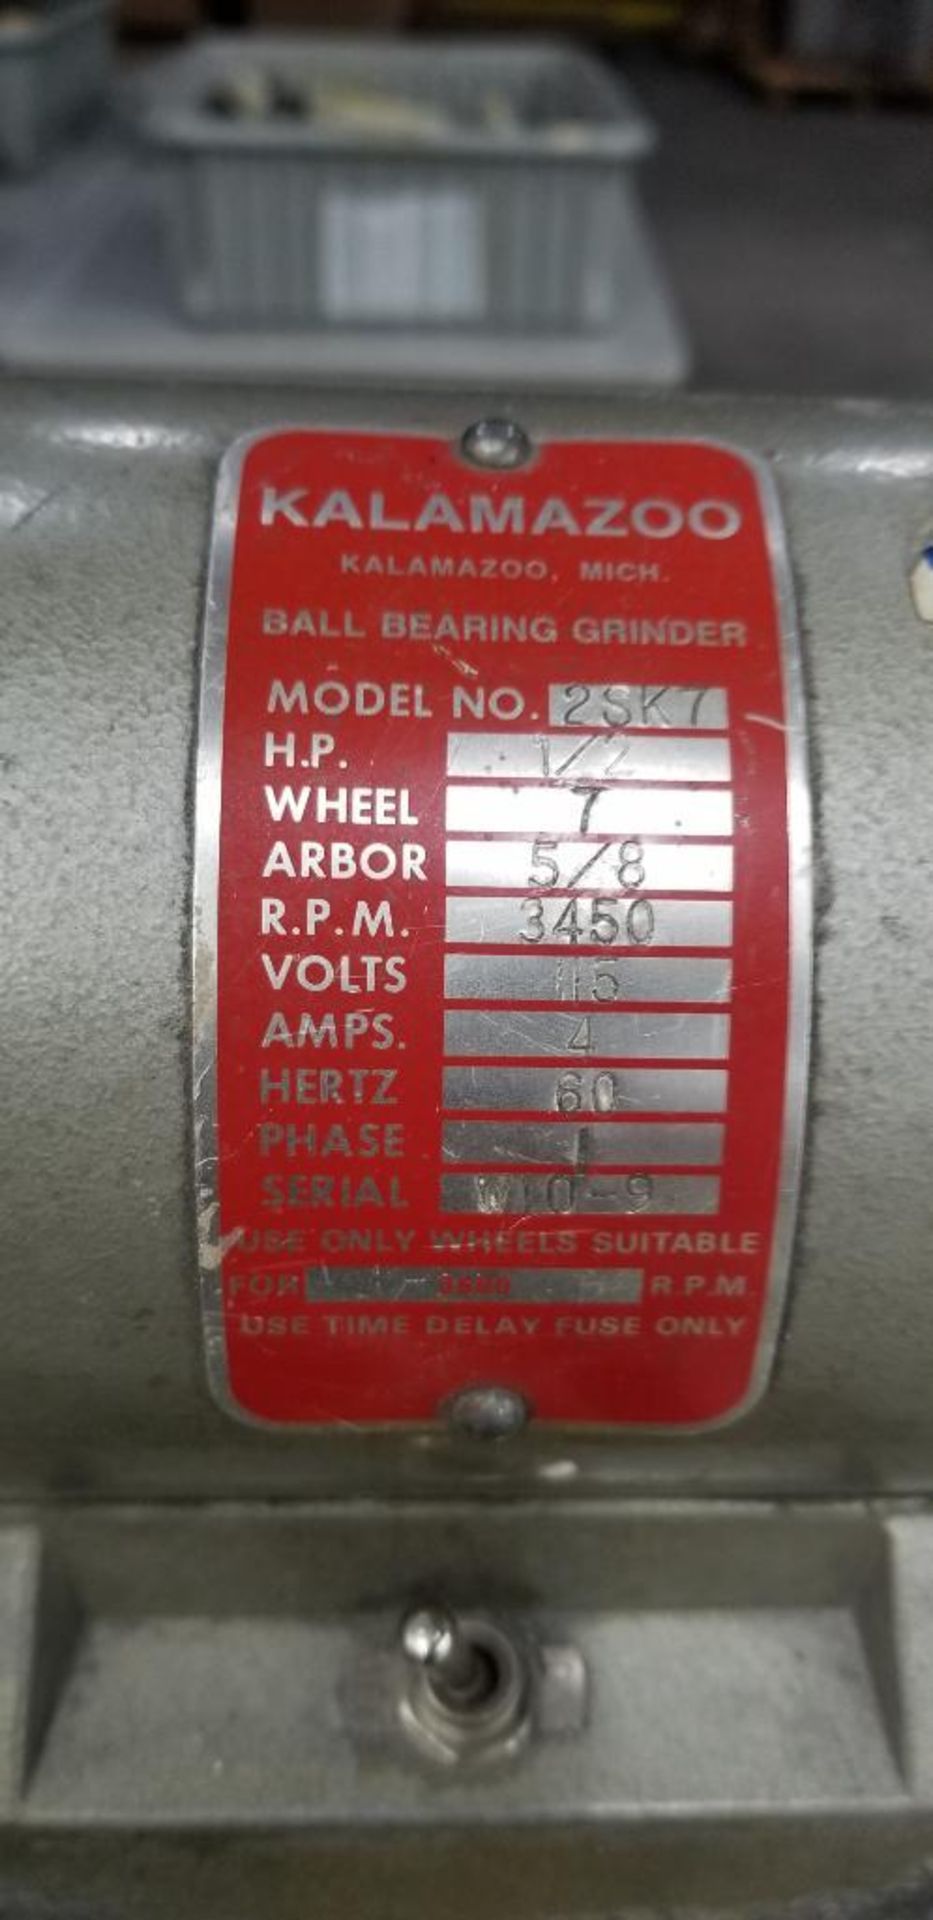 Kalamazoo Model 2SK7 Bench Grinder & Upright Belt Sander, 115v, Single Phase - Image 2 of 2